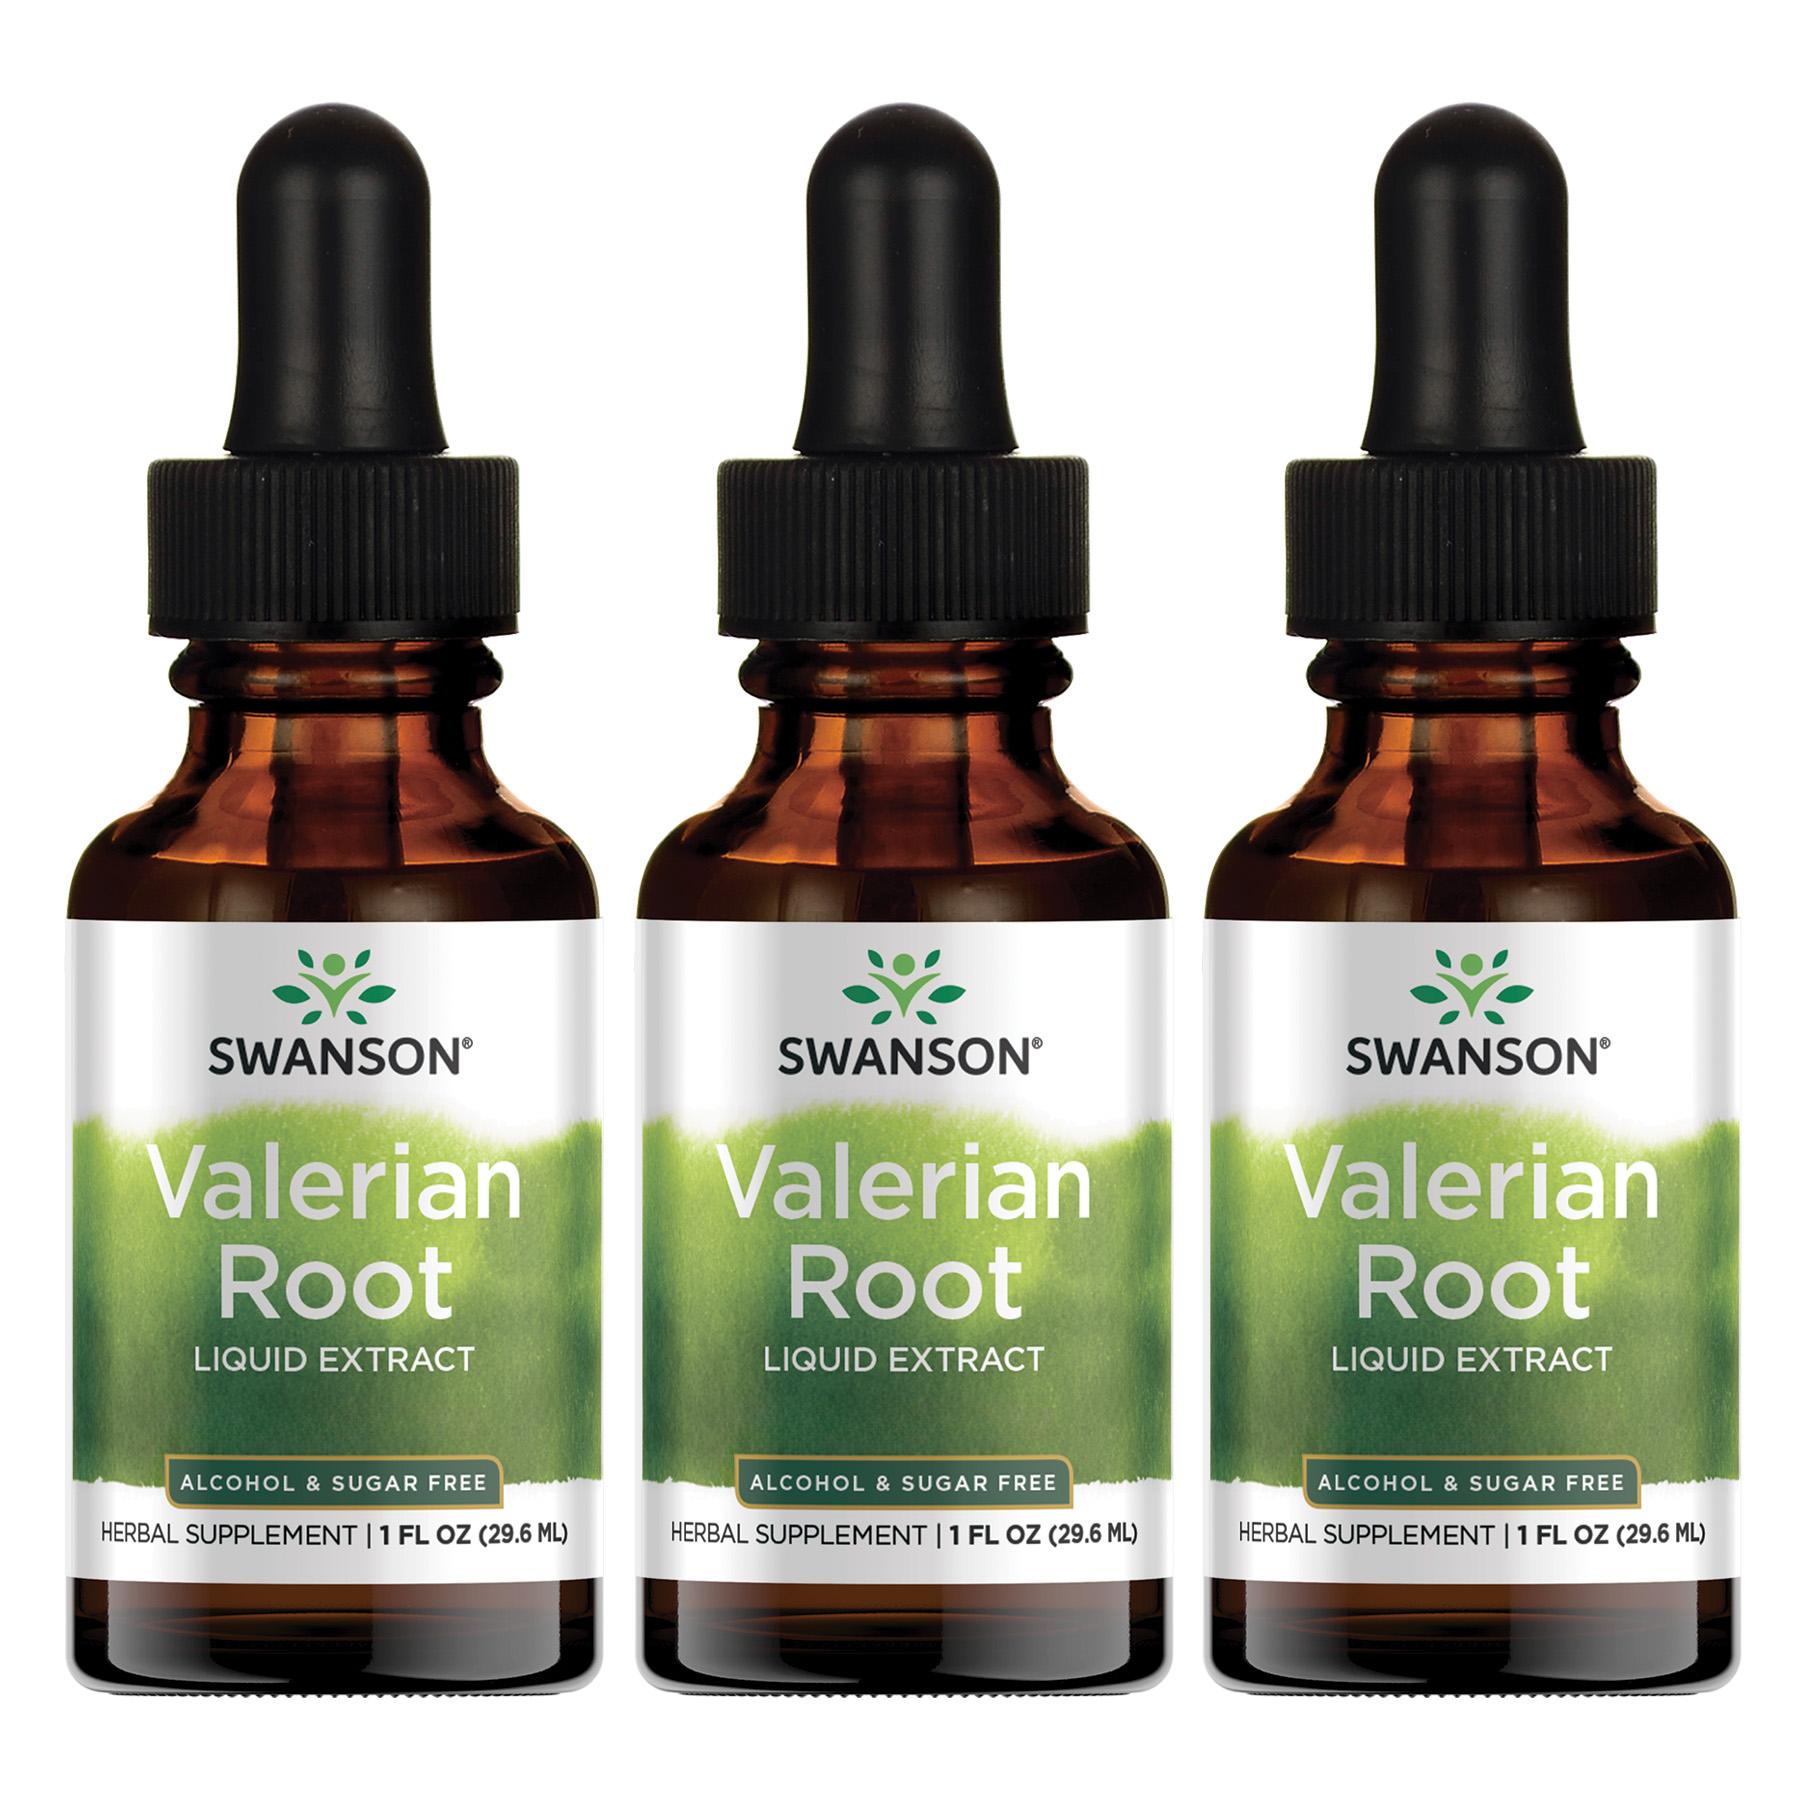 Swanson Premium Valerian Root Liquid Extract - Alcohol & Sugar Free 3 Pack Vitamin 1 G 1 fl oz Liquid